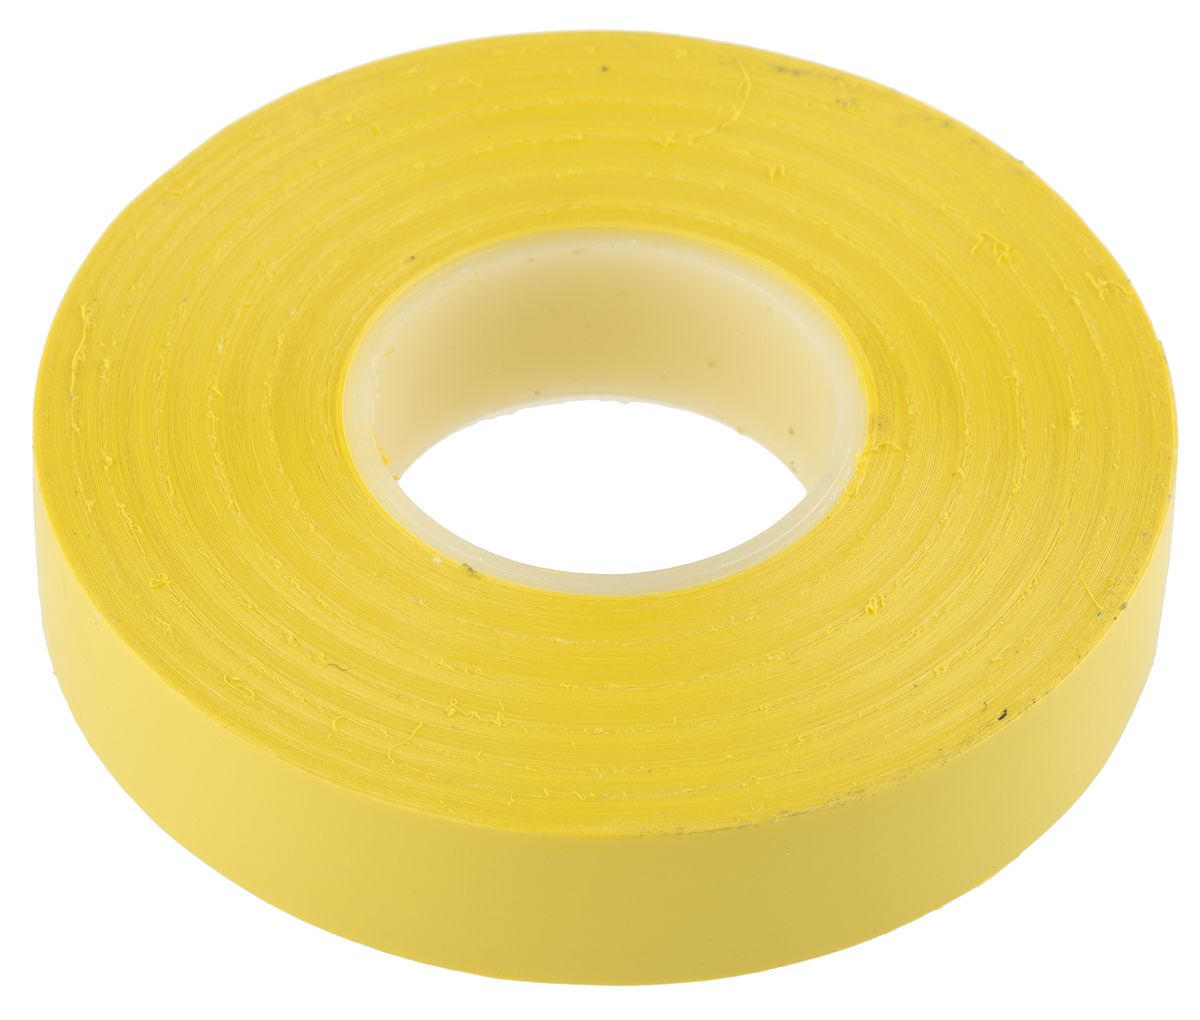 Advance Tapes Elektromos szigetelőszalag, 12mm x 20m, 0.13mm vastag, Sárga